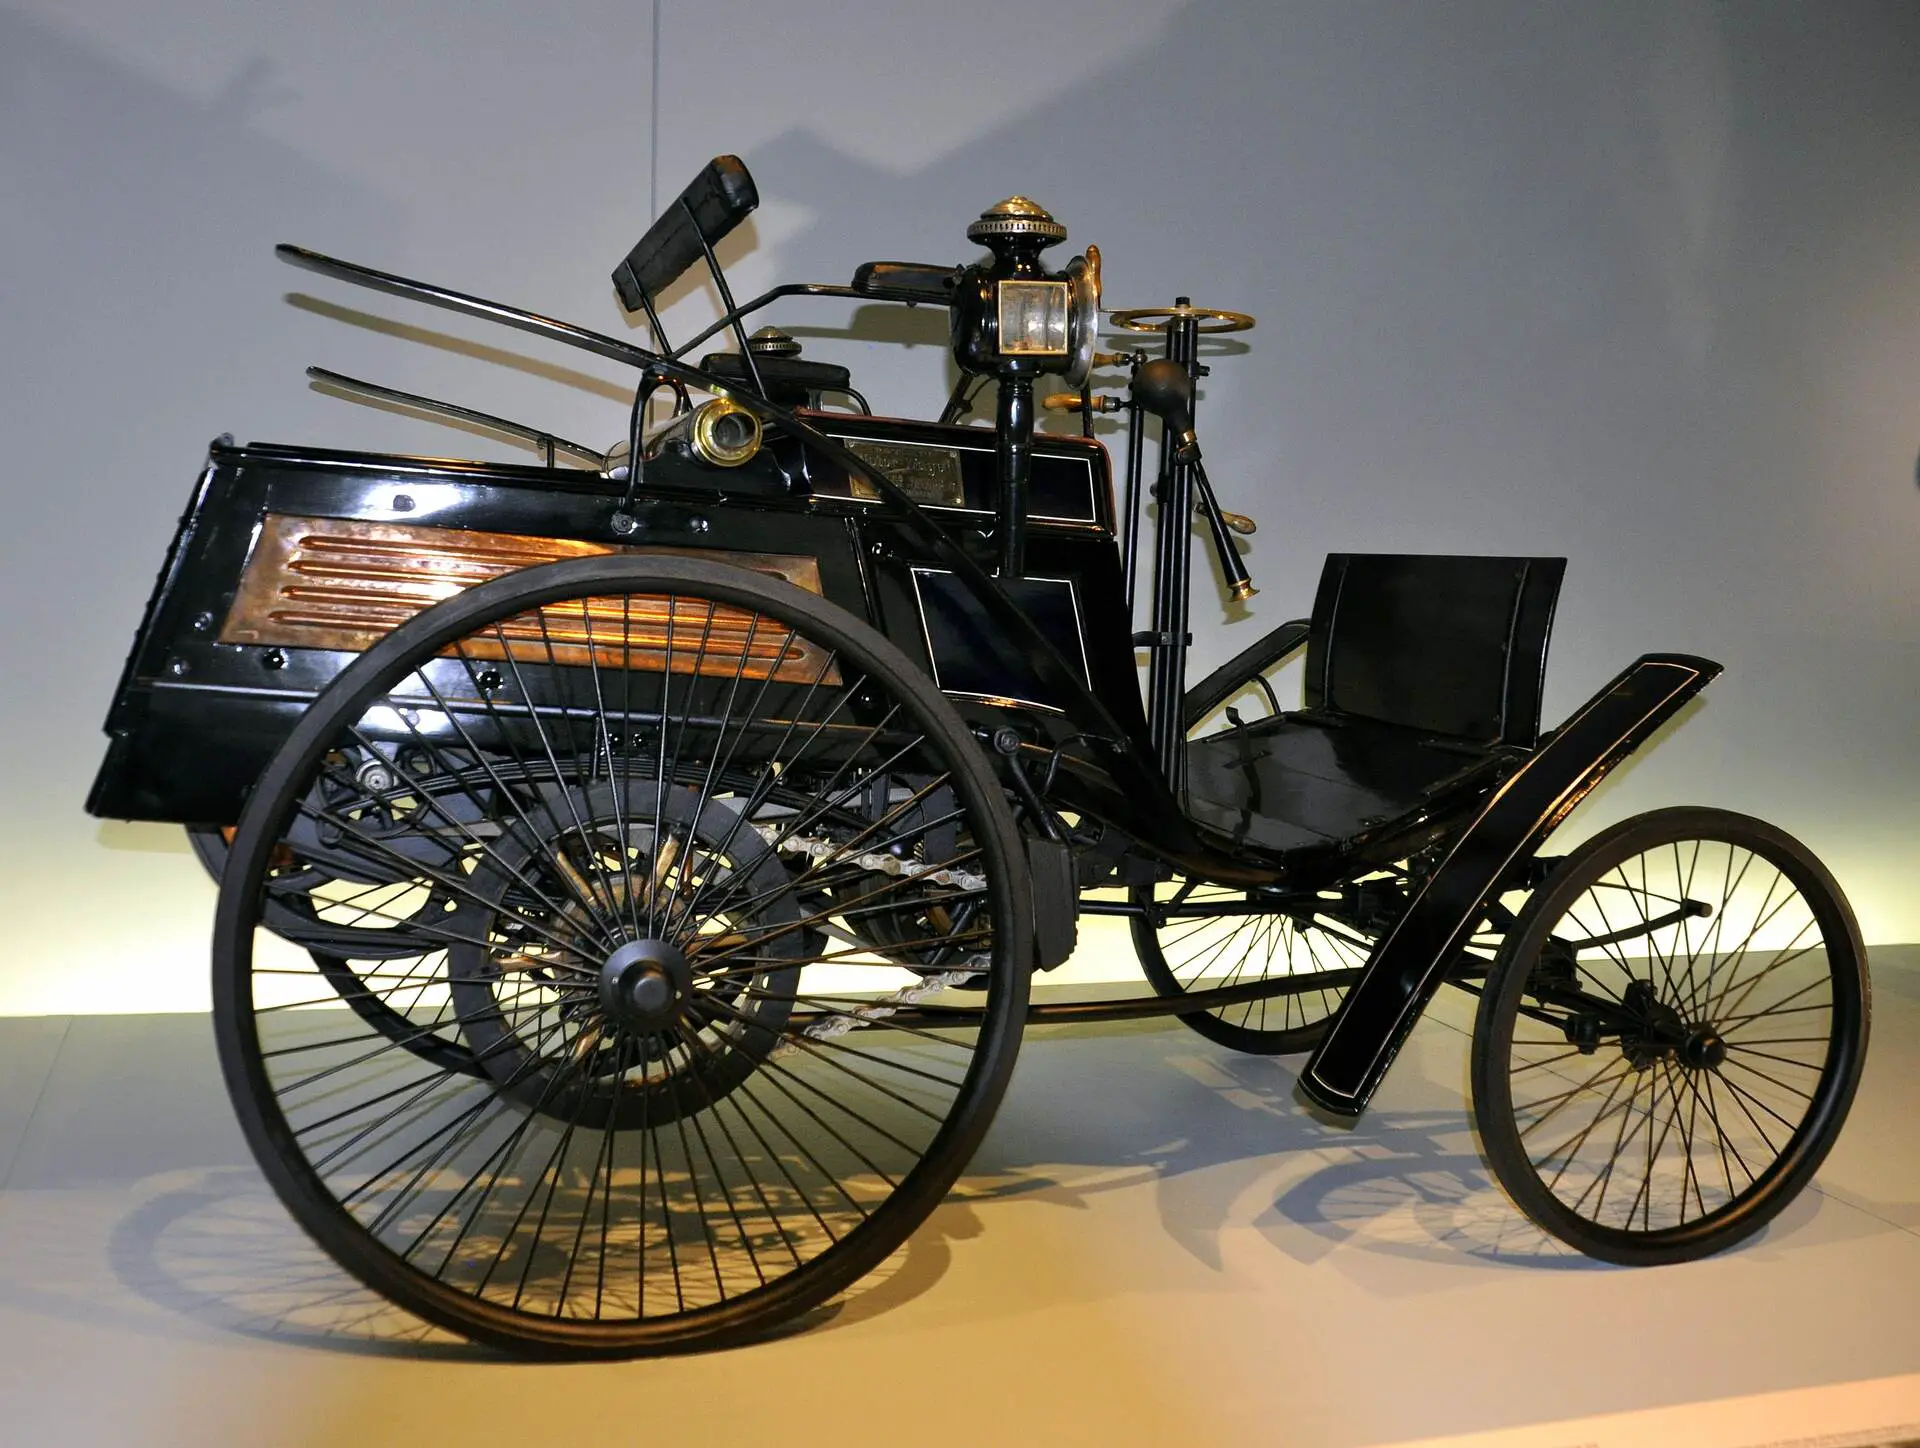 Karl Benz Motorwagen in a museum